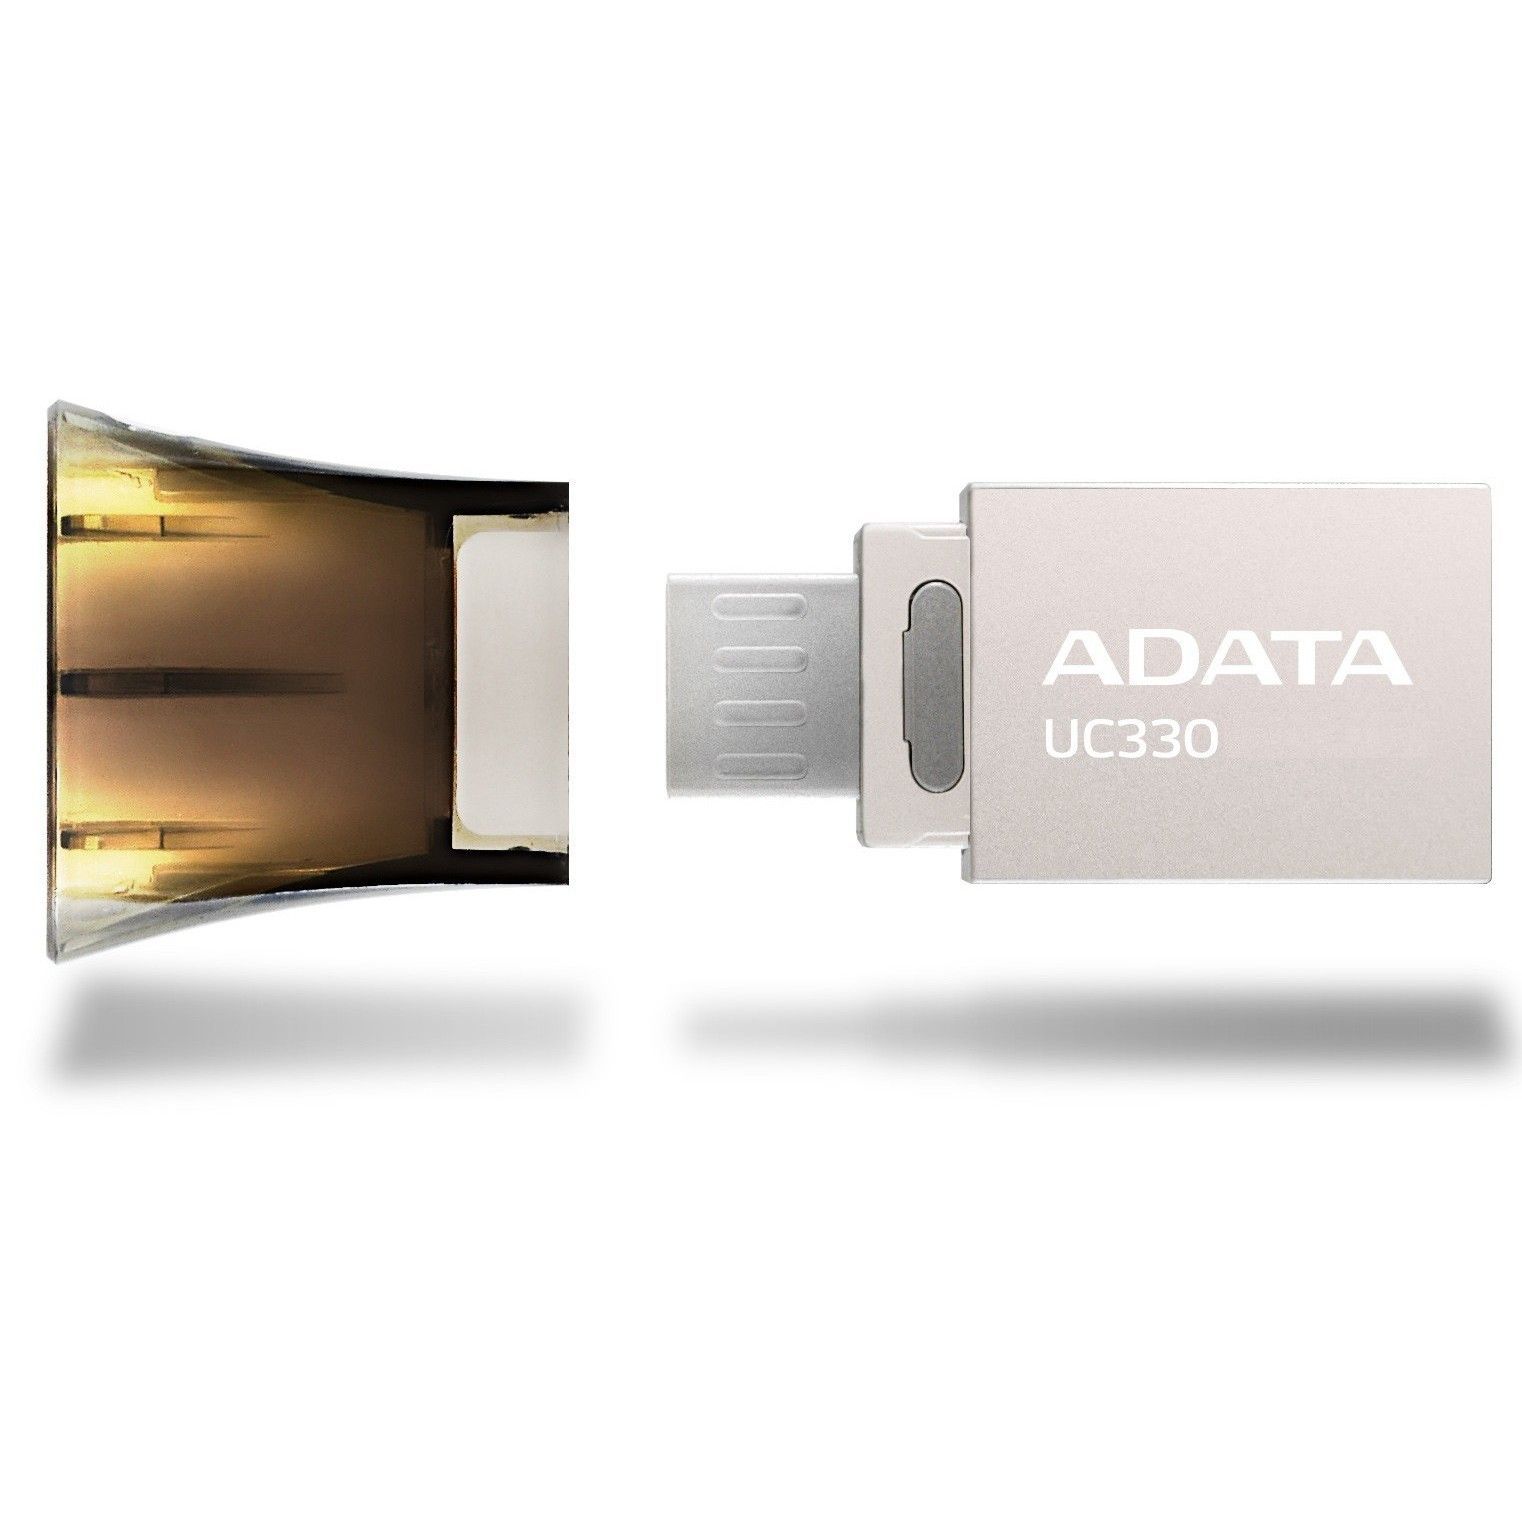 Флеш накопитель 32Gb ADATA DashDriver UC330 OTG [AUC330-32G-RBK], USB 2.0/MicroUSB (серебро/черный) 